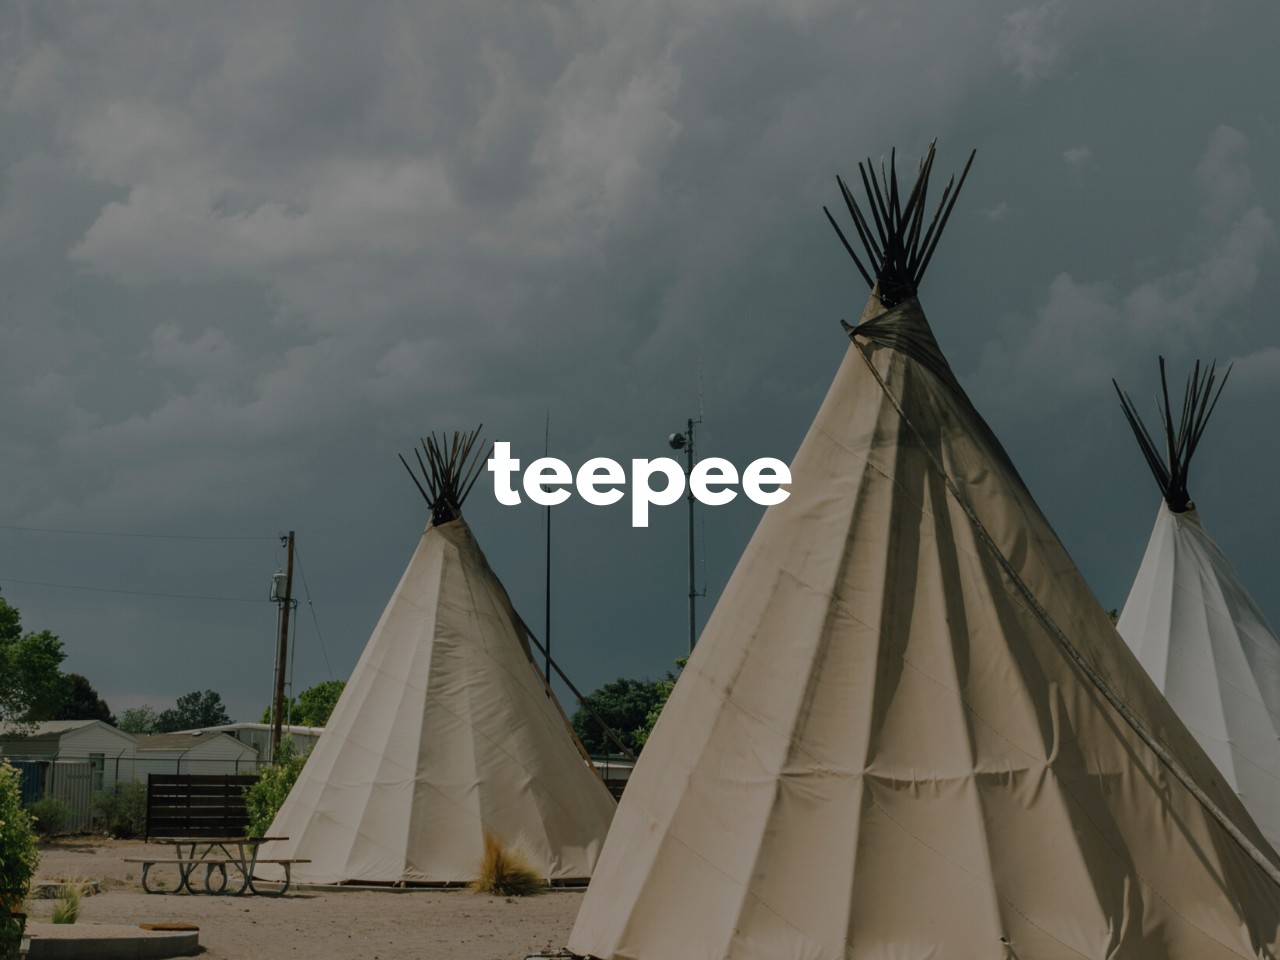 teepee : アメリカ先住民のテント